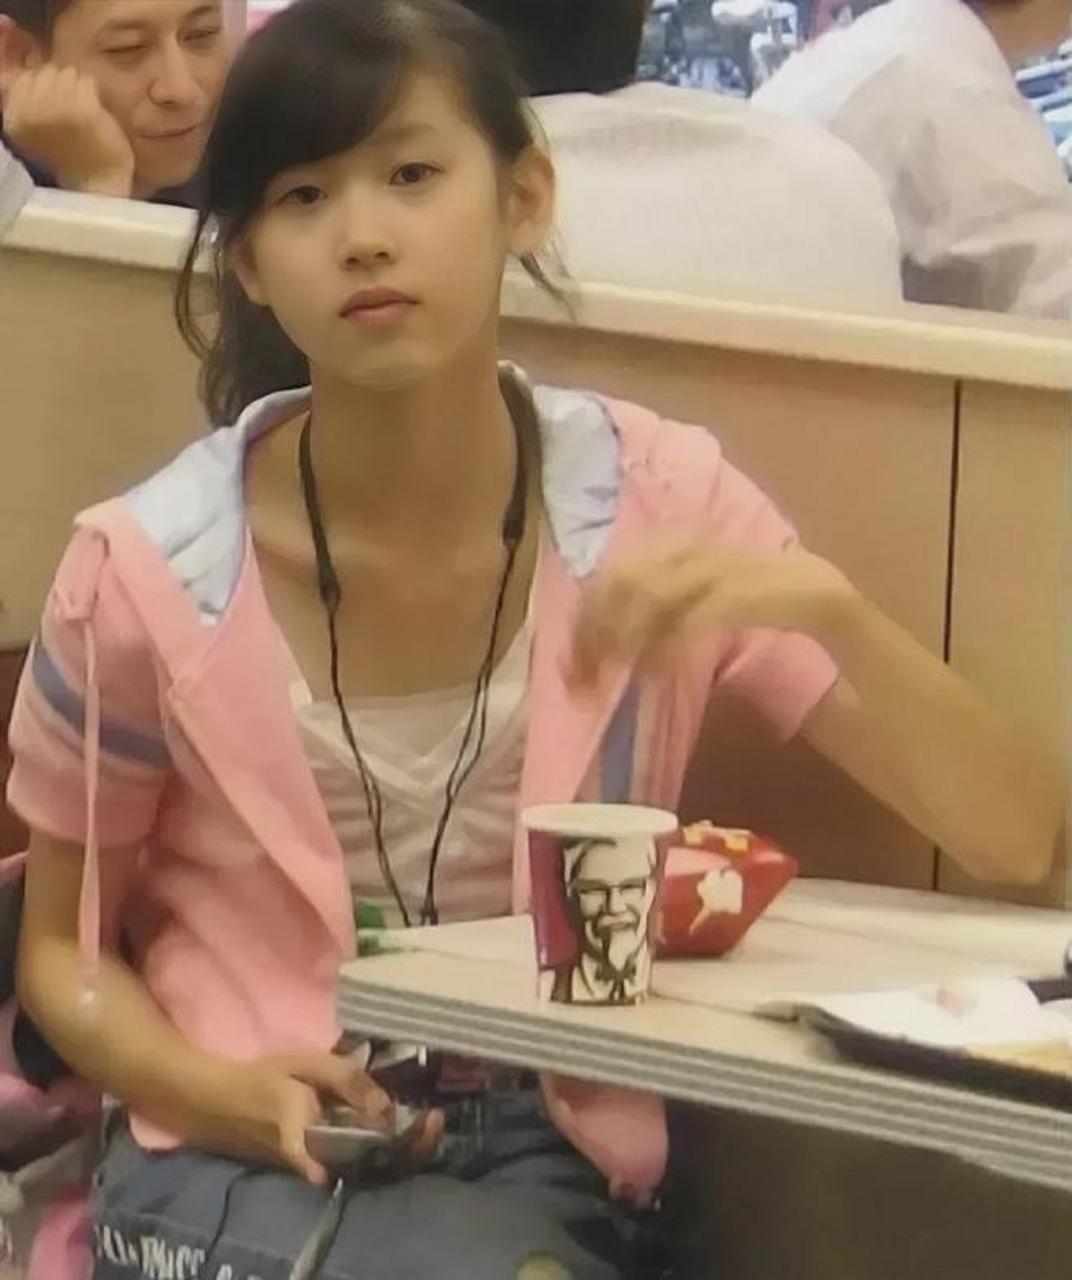 章泽天的照片,此时她正在吃肯德基,画面中她穿着粉色外套,有点消瘦